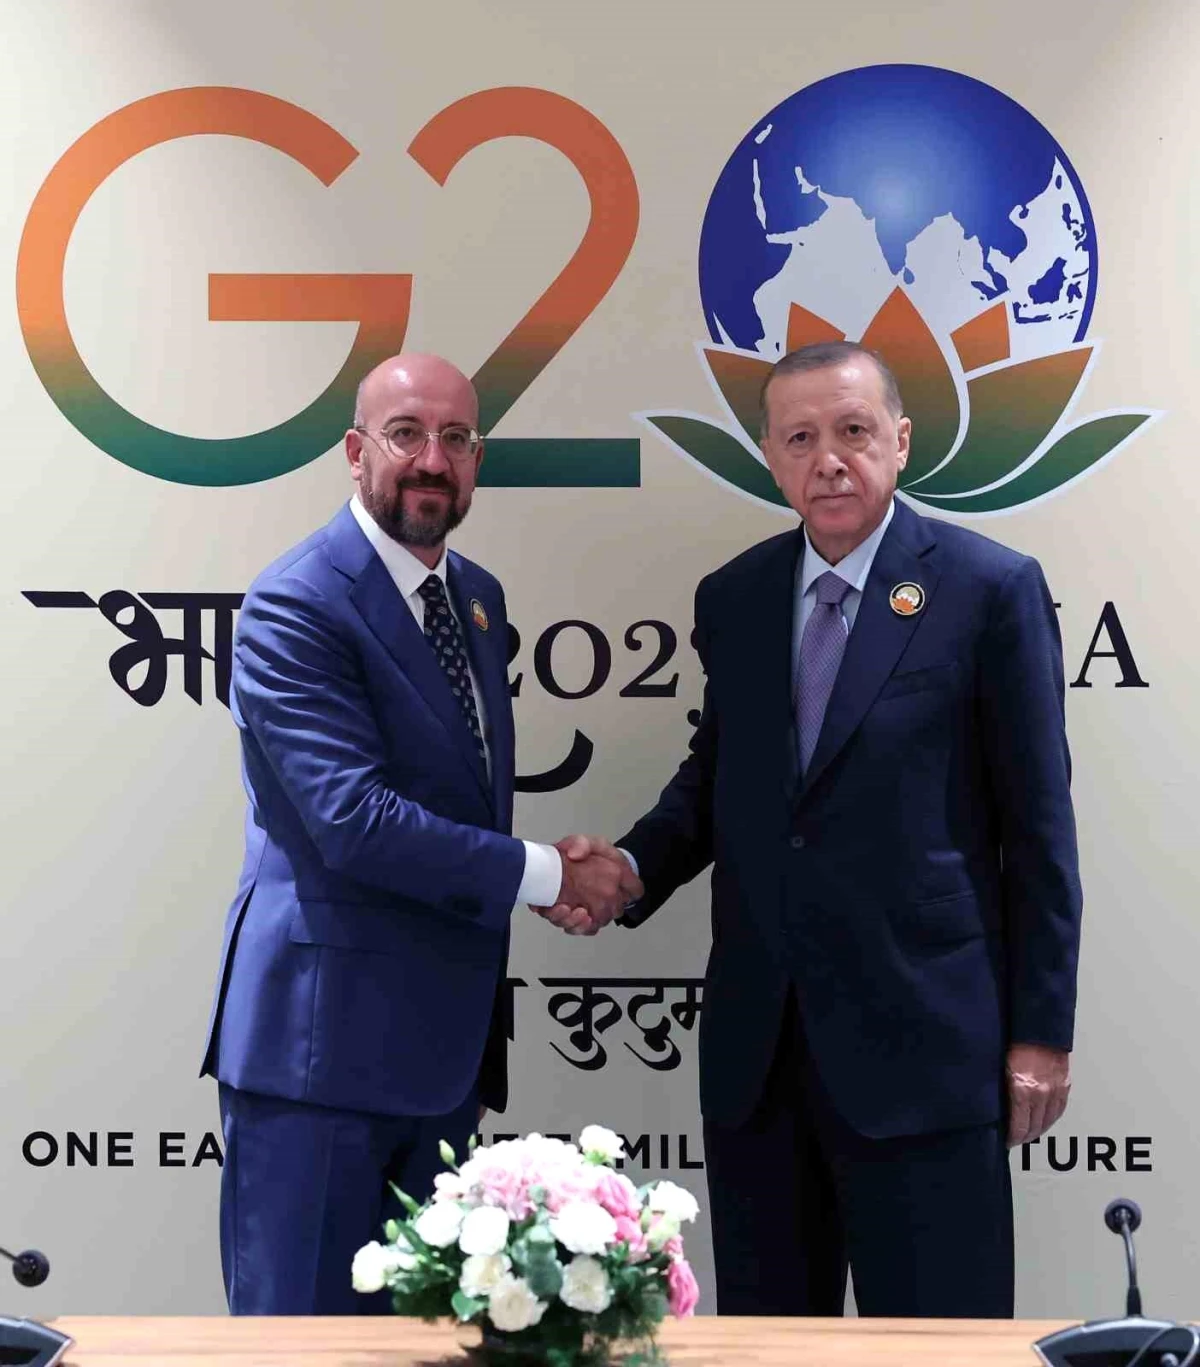 Cumhurbaşkanı Recep Tayyip Erdoğan, G20 Önderler Tepesi kapsamında Avrupa Birliği Kurulu Lideri Charles Michel ile bir ortaya geldi.